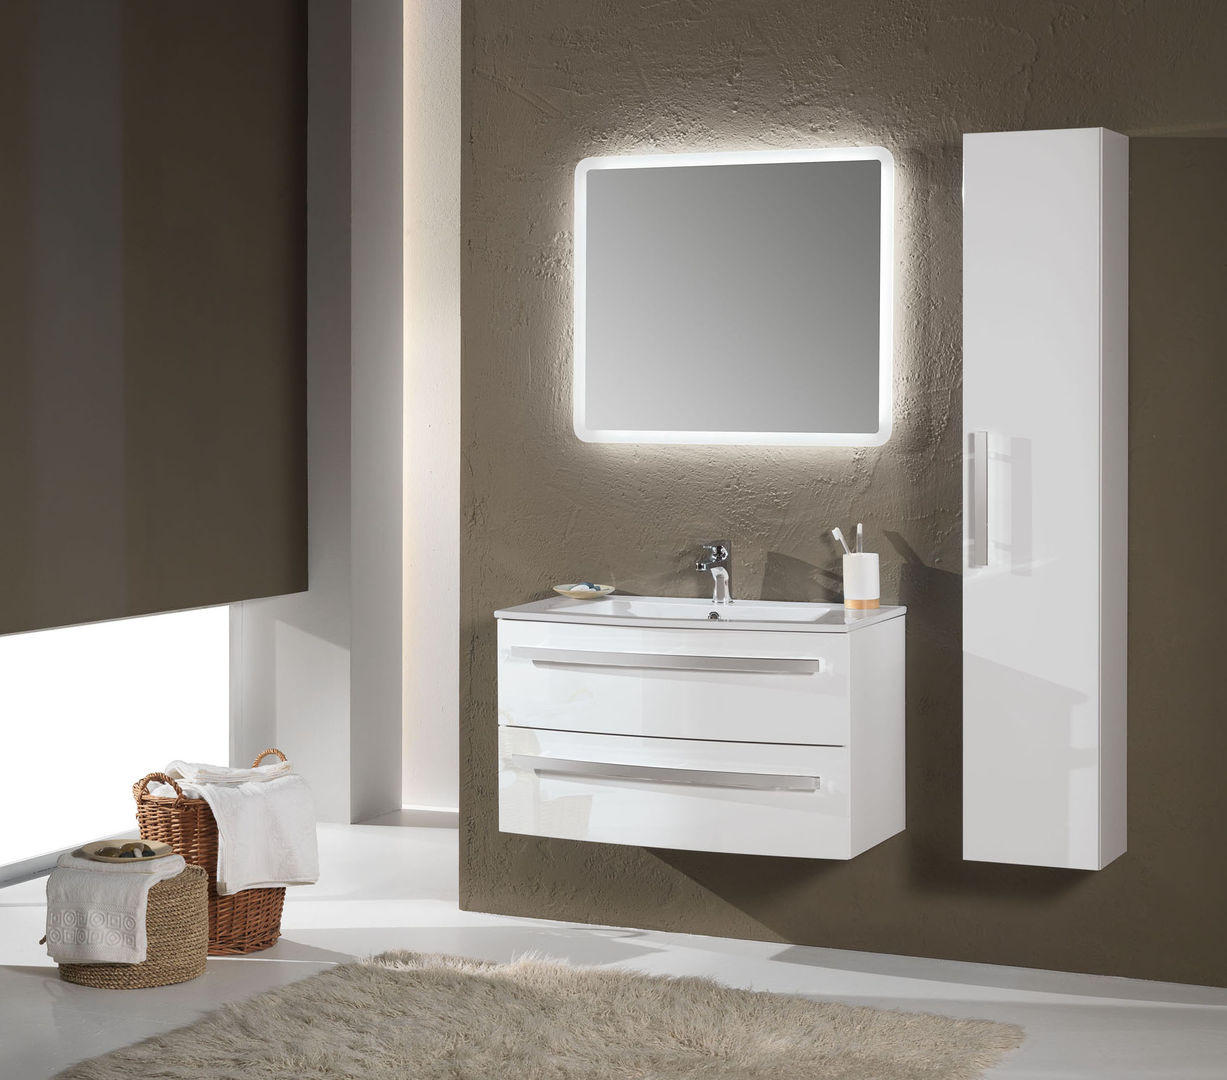 Oscar 06 FALEGNAMERIA ADRIATICA S.r.l. Bagno moderno lavabo ceramica,specchio a LED,colonna,laccato bianco